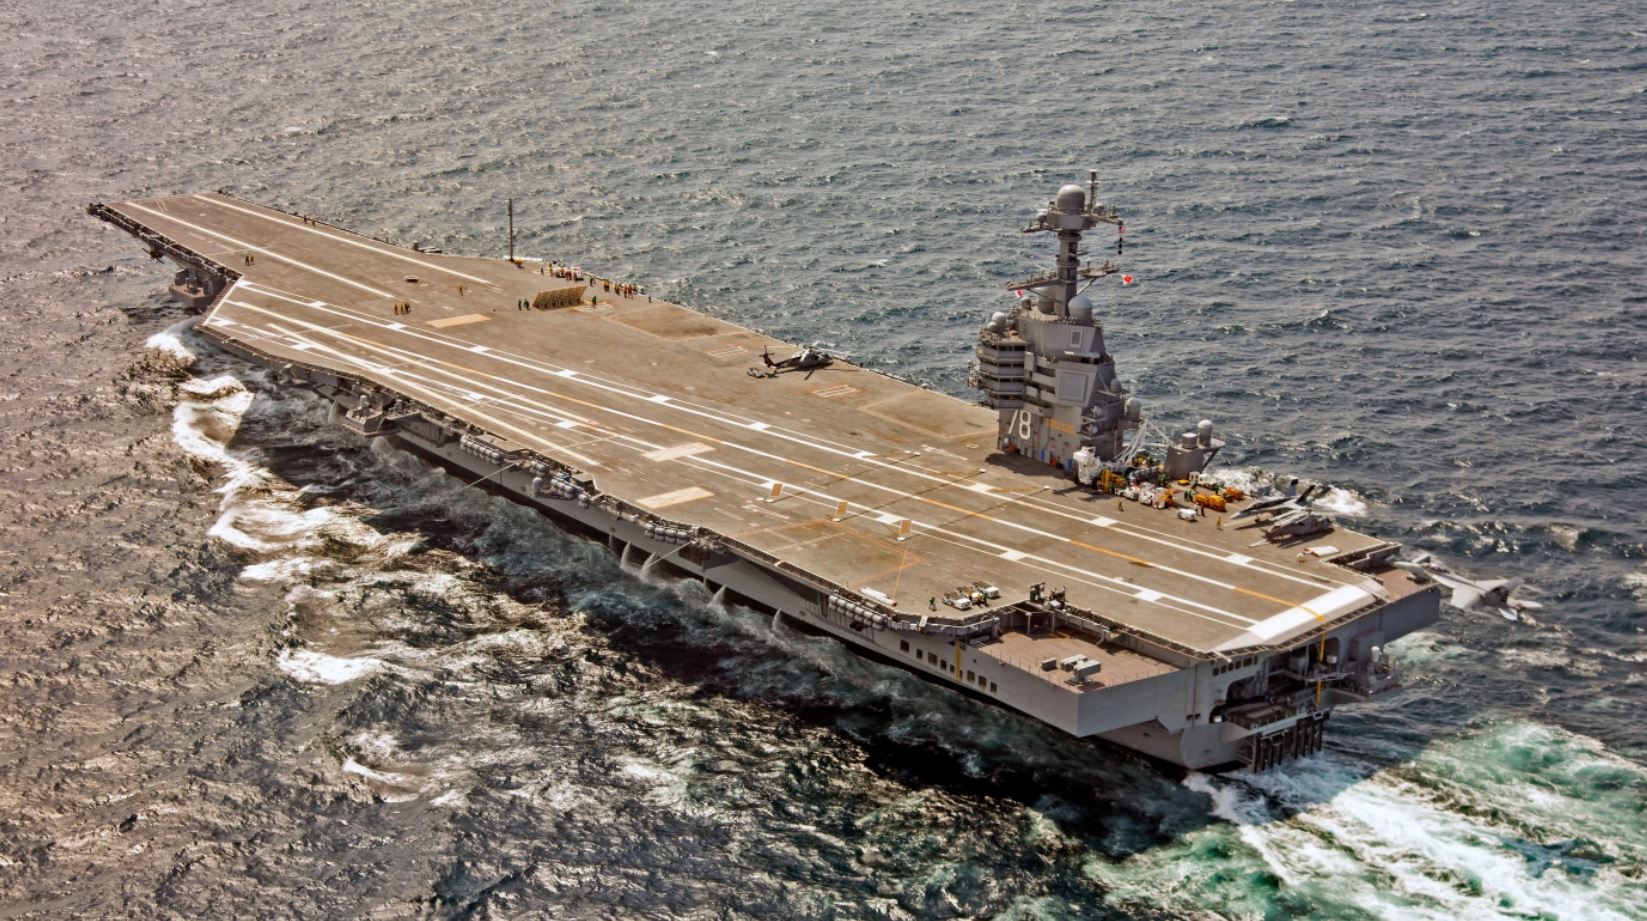 Mire képes a USS Gerald R. Ford, a legfejlettebb hadihajó, amit most Izraelhez irányított Amerika?